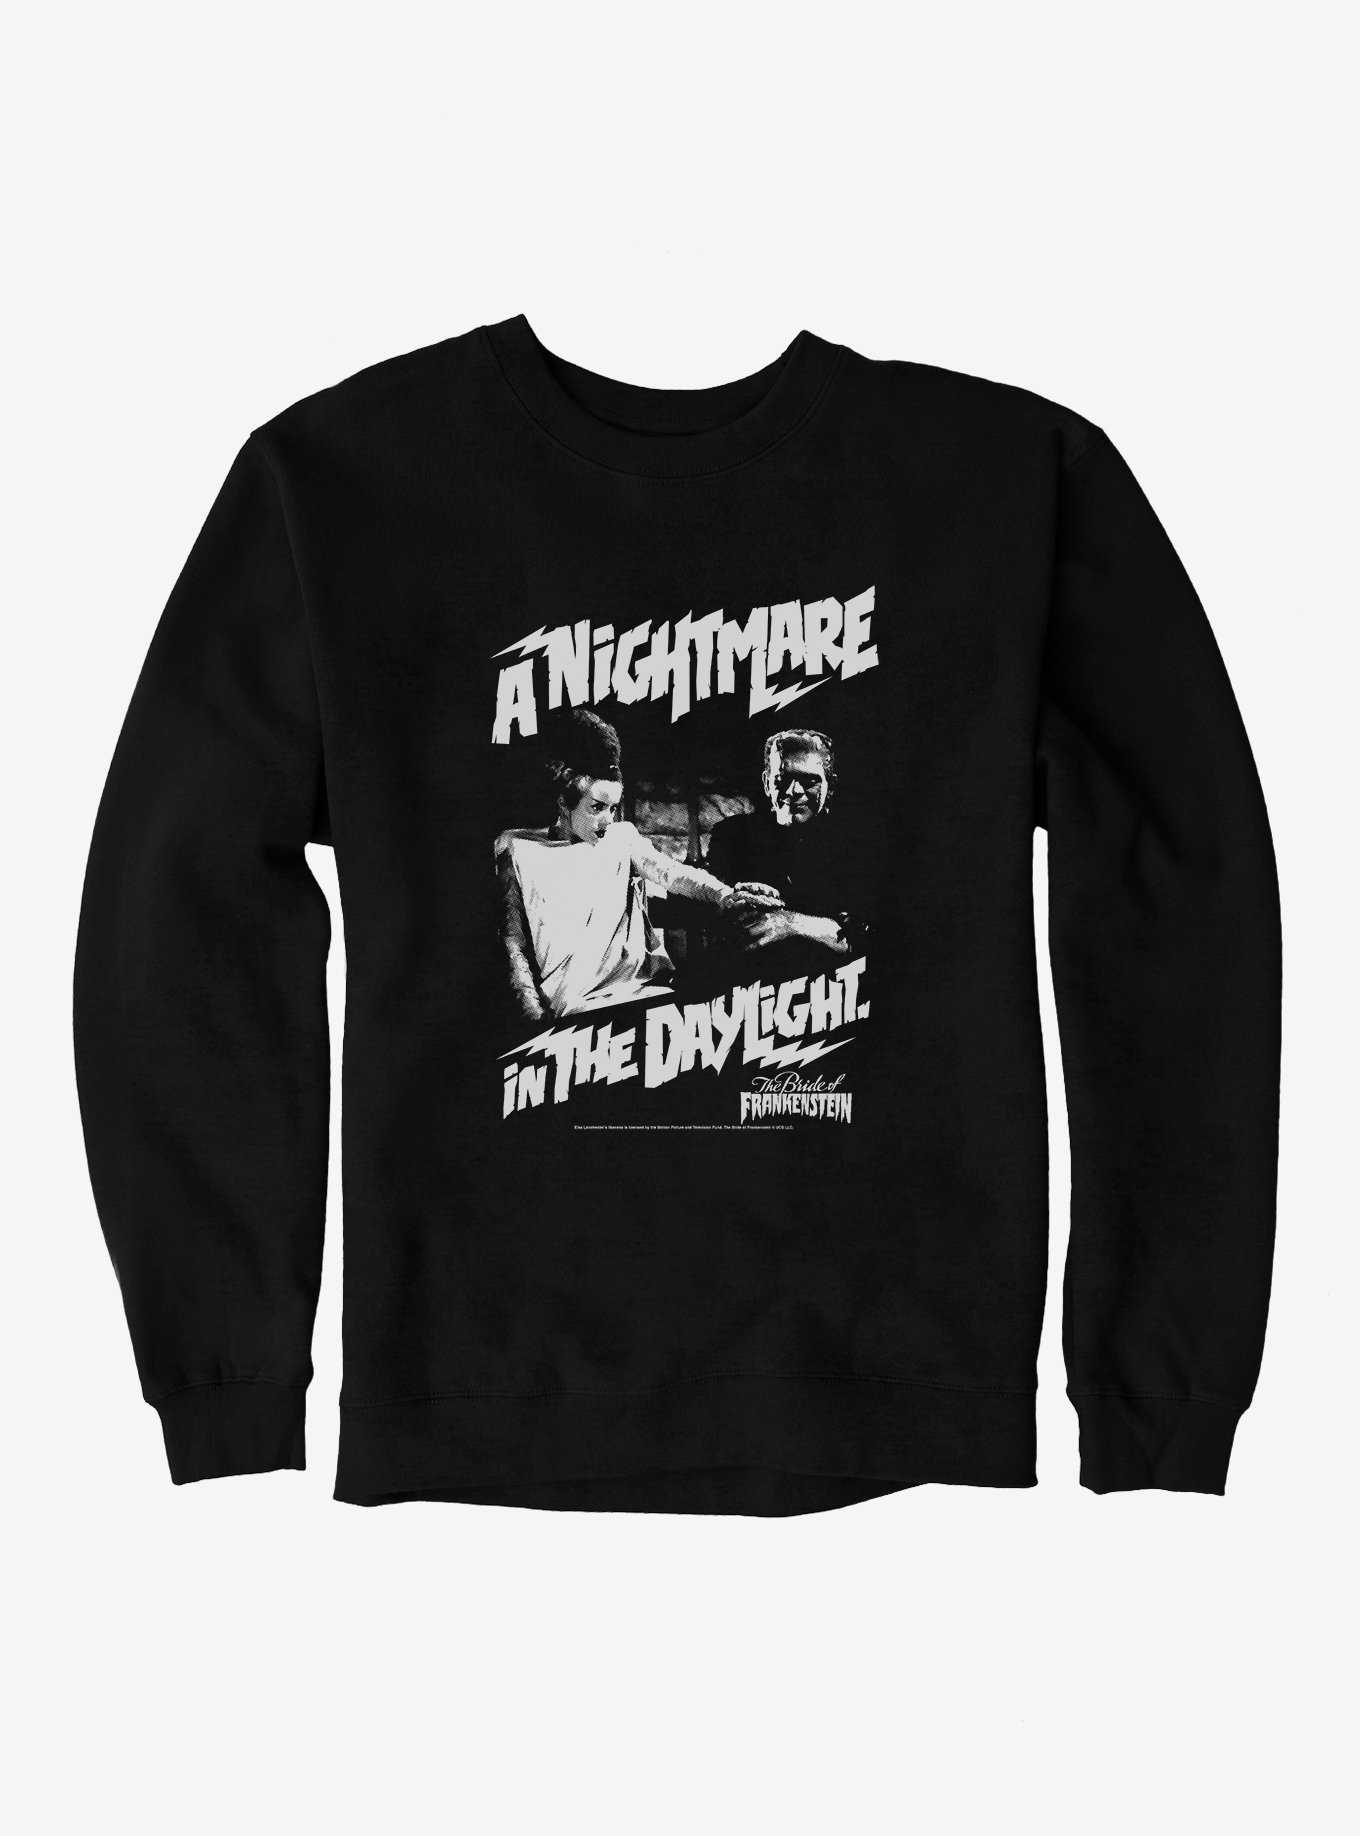 The Bride Of Frankenstein A Nightmare In The Daylight Sweatshirt, , hi-res